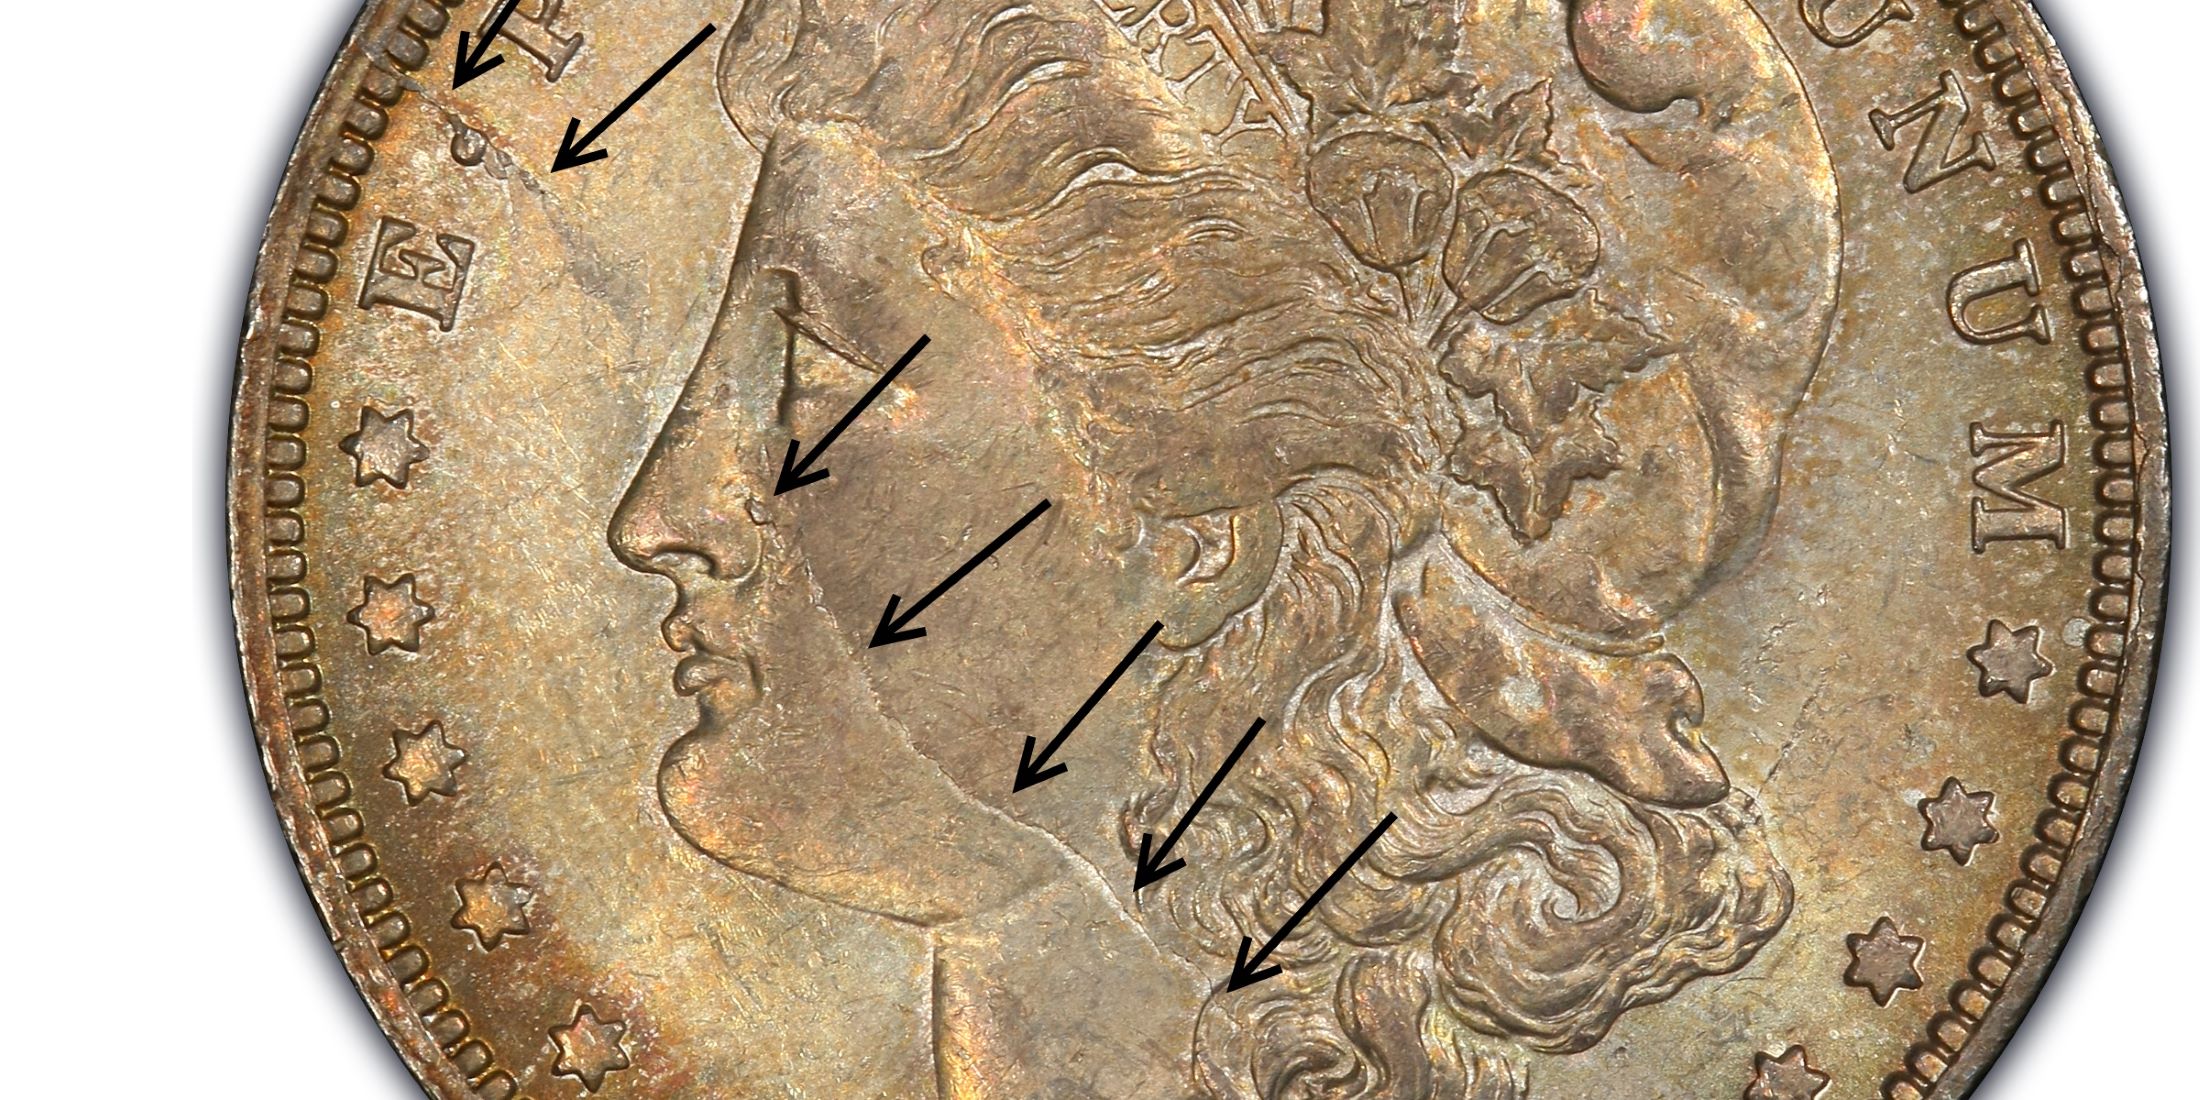 1888 o morgan silver dollar scarface